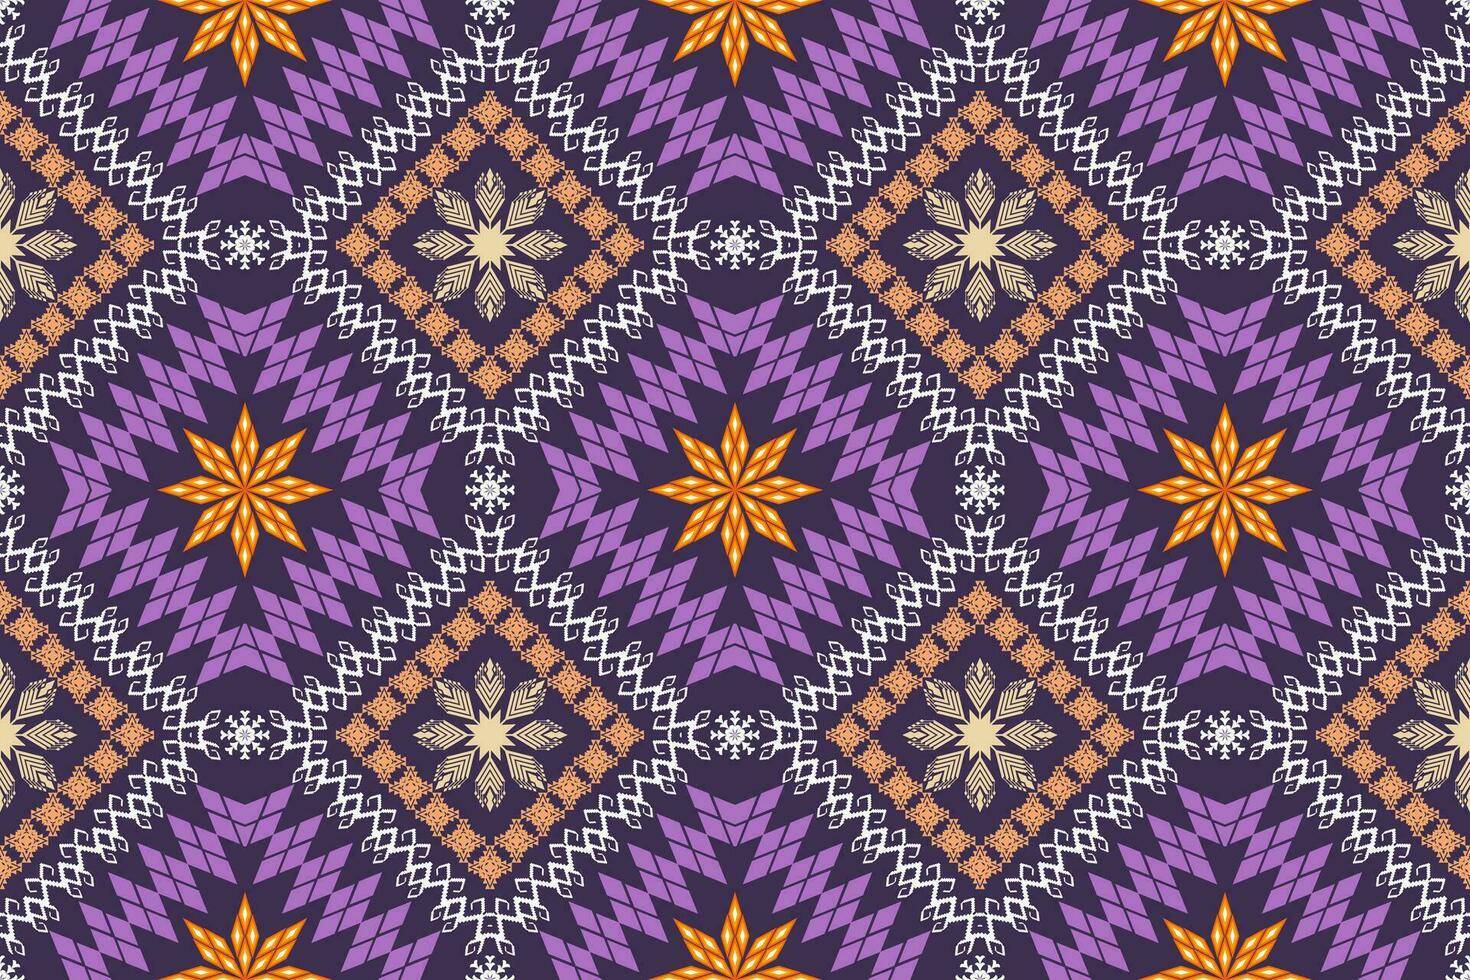 geométrico étnico azteca bordado estilo.figura ikat oriental tradicional Arte patrón de diseño para étnico fondo,fondo de pantalla,moda,ropa,envoltura,tela,elemento,pareo,gráfico,vector ilustración. vector